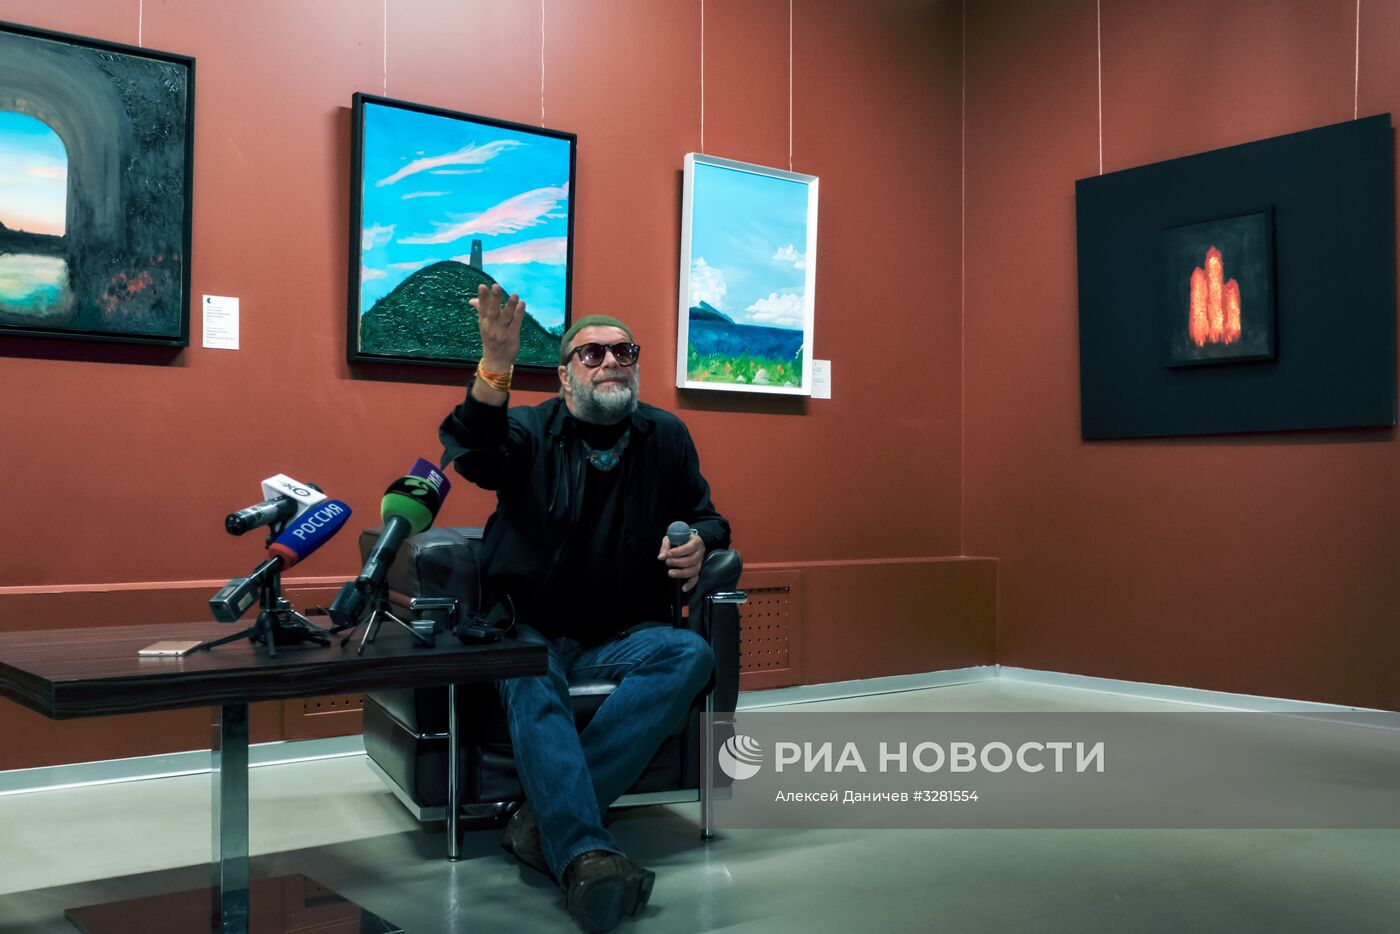 Открытие выставки "Азбука Лунного Света" Бориса Гребенщикова в Санкт-Петербурге